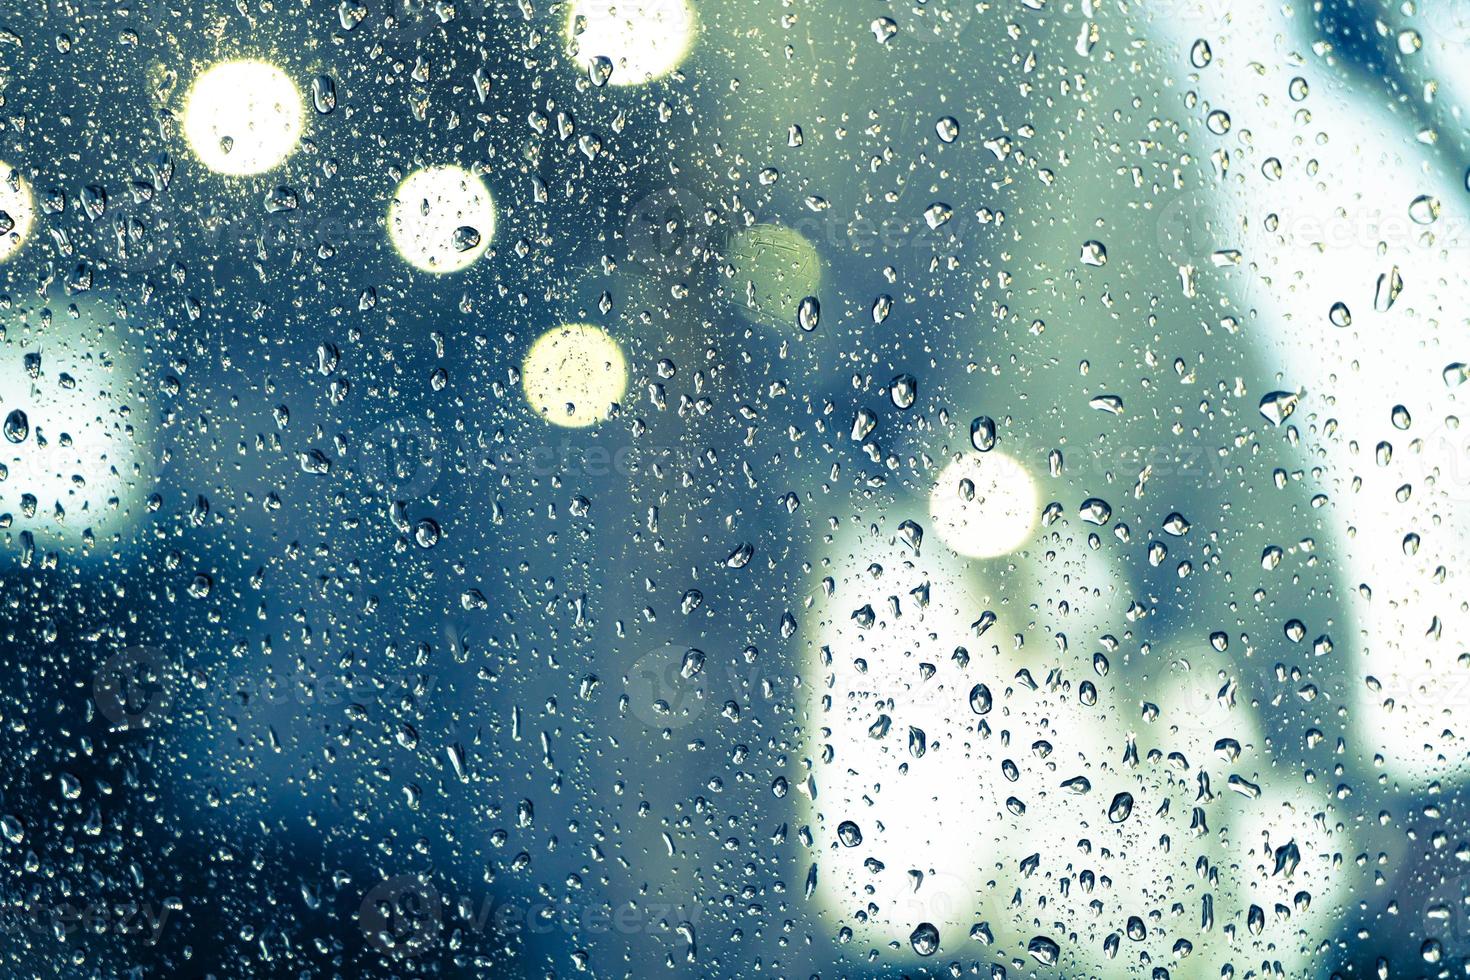 gotas de lluvia en la ventana foto